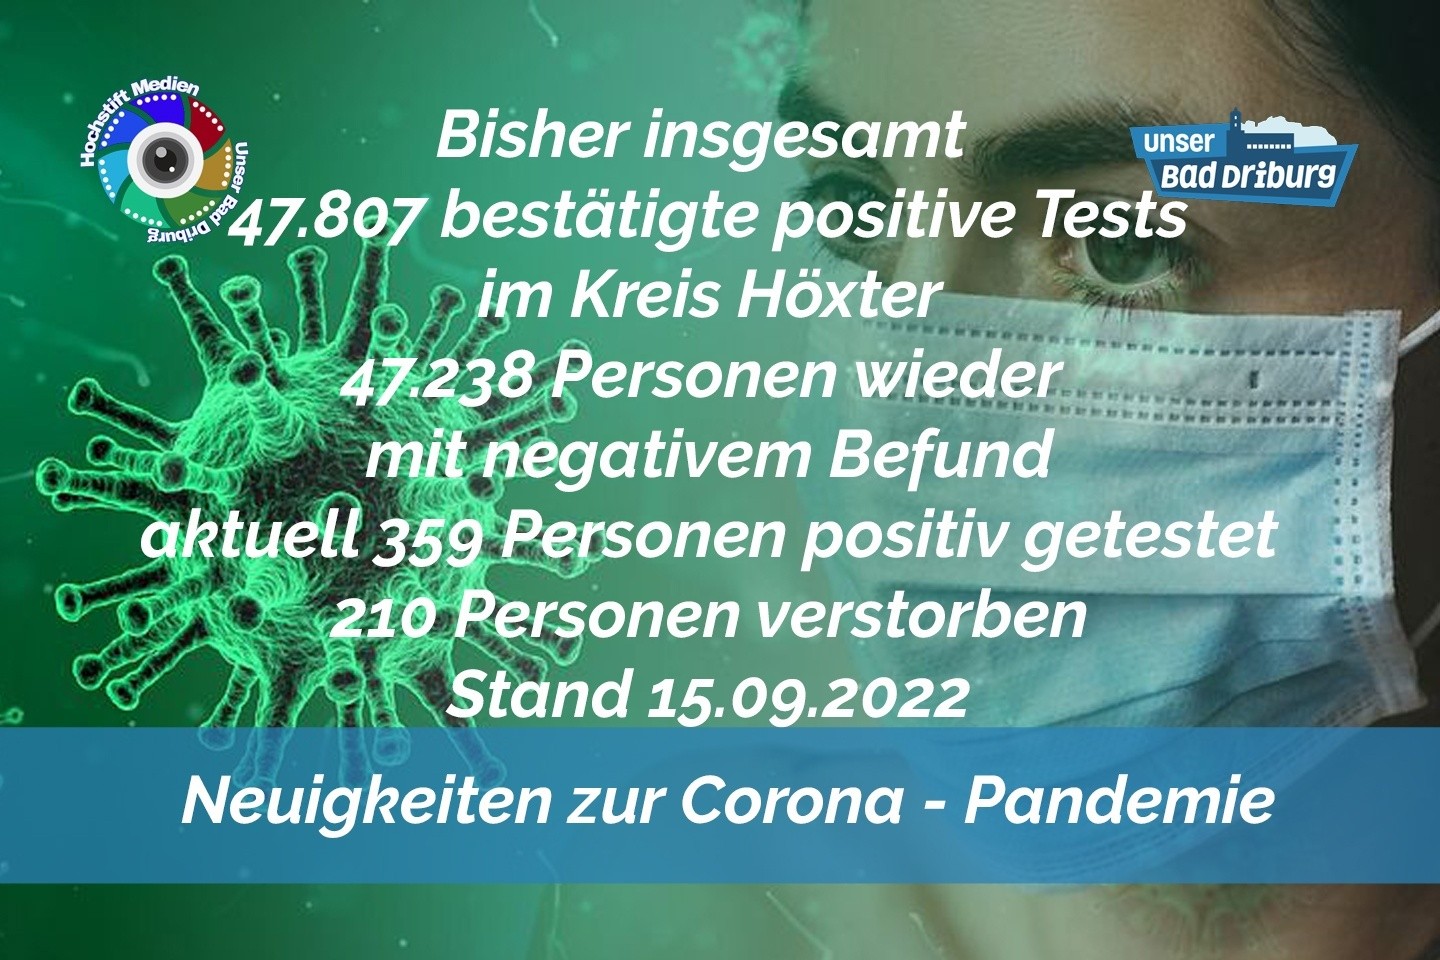 Update 15. September 2022: 59 weitere amtlich positive Tests im Kreis Höxter